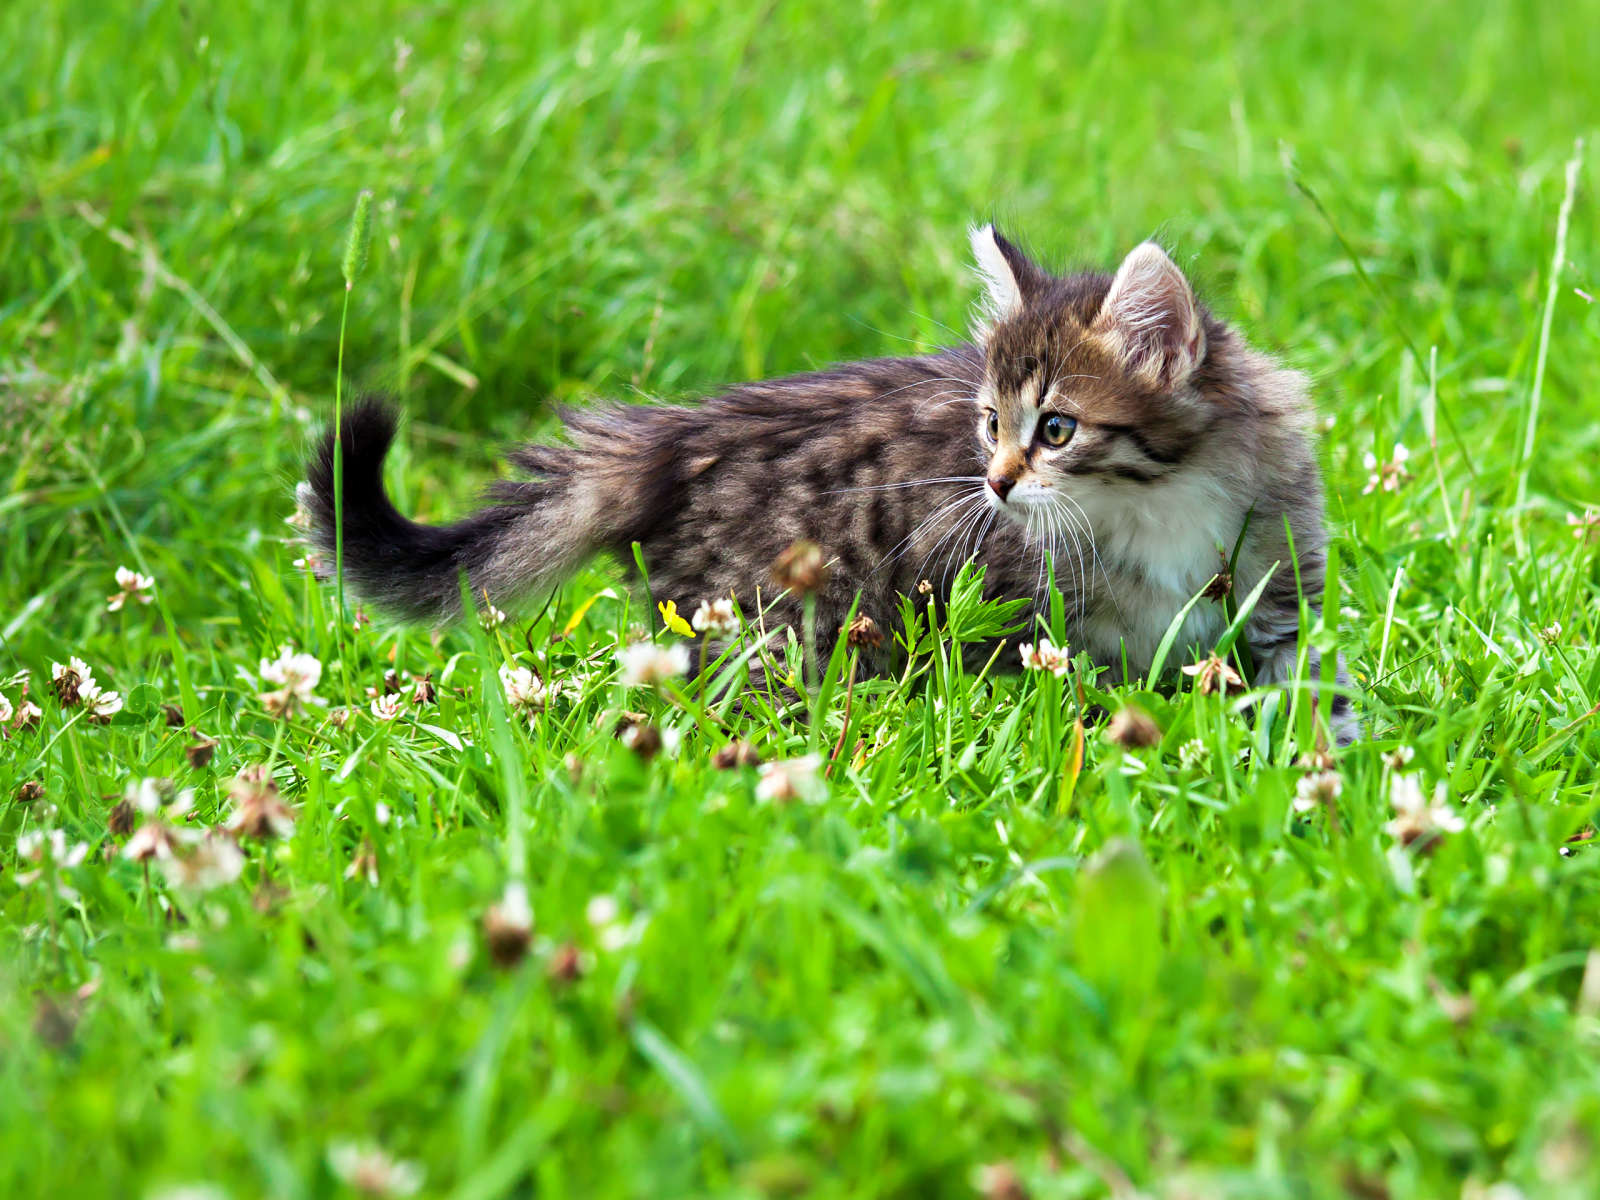 Monet kissat ja koirat saavat kesäisin liikkua vapaasti esimerkiksi mökin pihapiirissä, jolloin ne saavat hyönteisten puremia ja pistoksia.